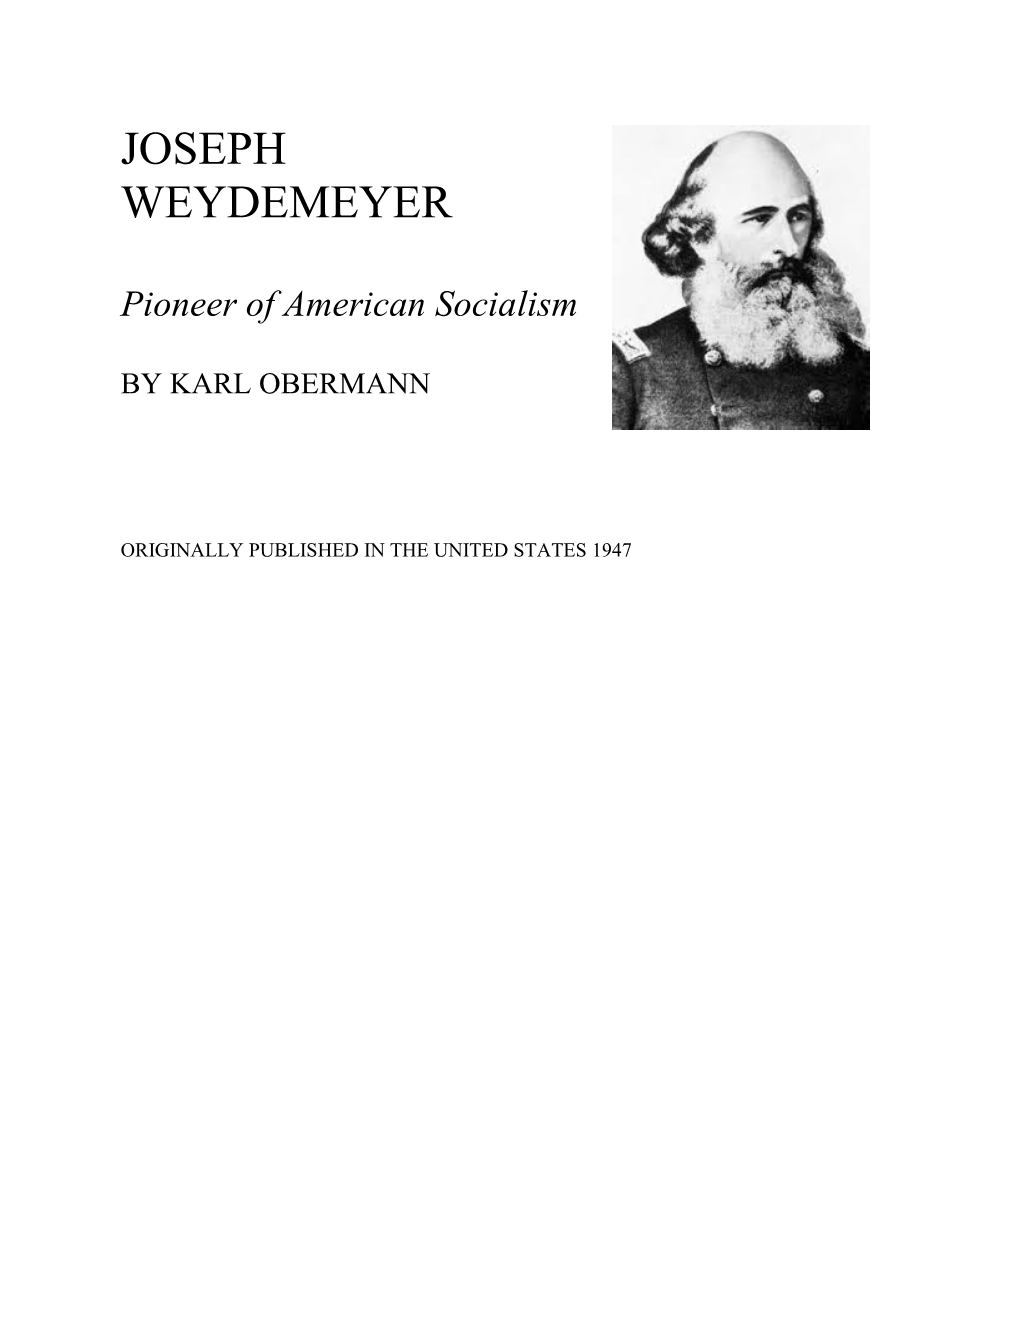 Joseph Weydemeyer: Pioneer of American Socialism